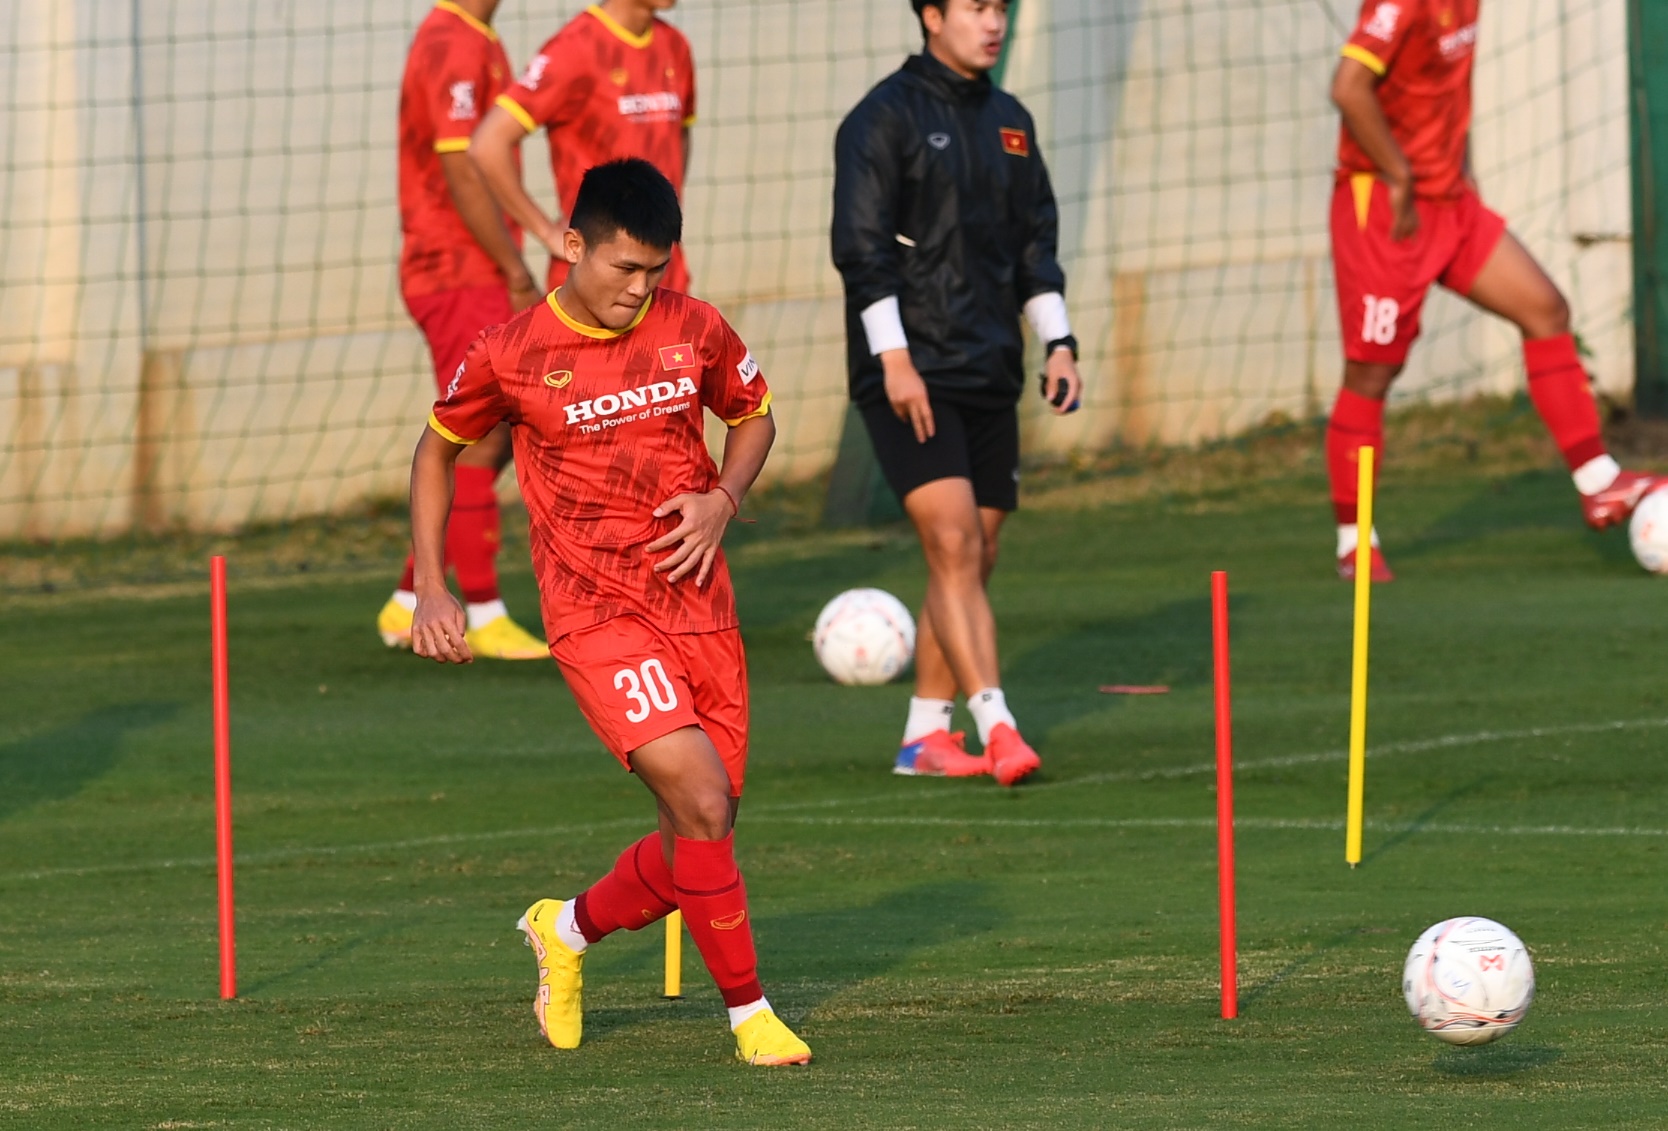 HLV Park Hang-seo cạn lời, cầu thủ ĐT Việt Nam bật cười với bài tập chóng mặt - Ảnh 1.